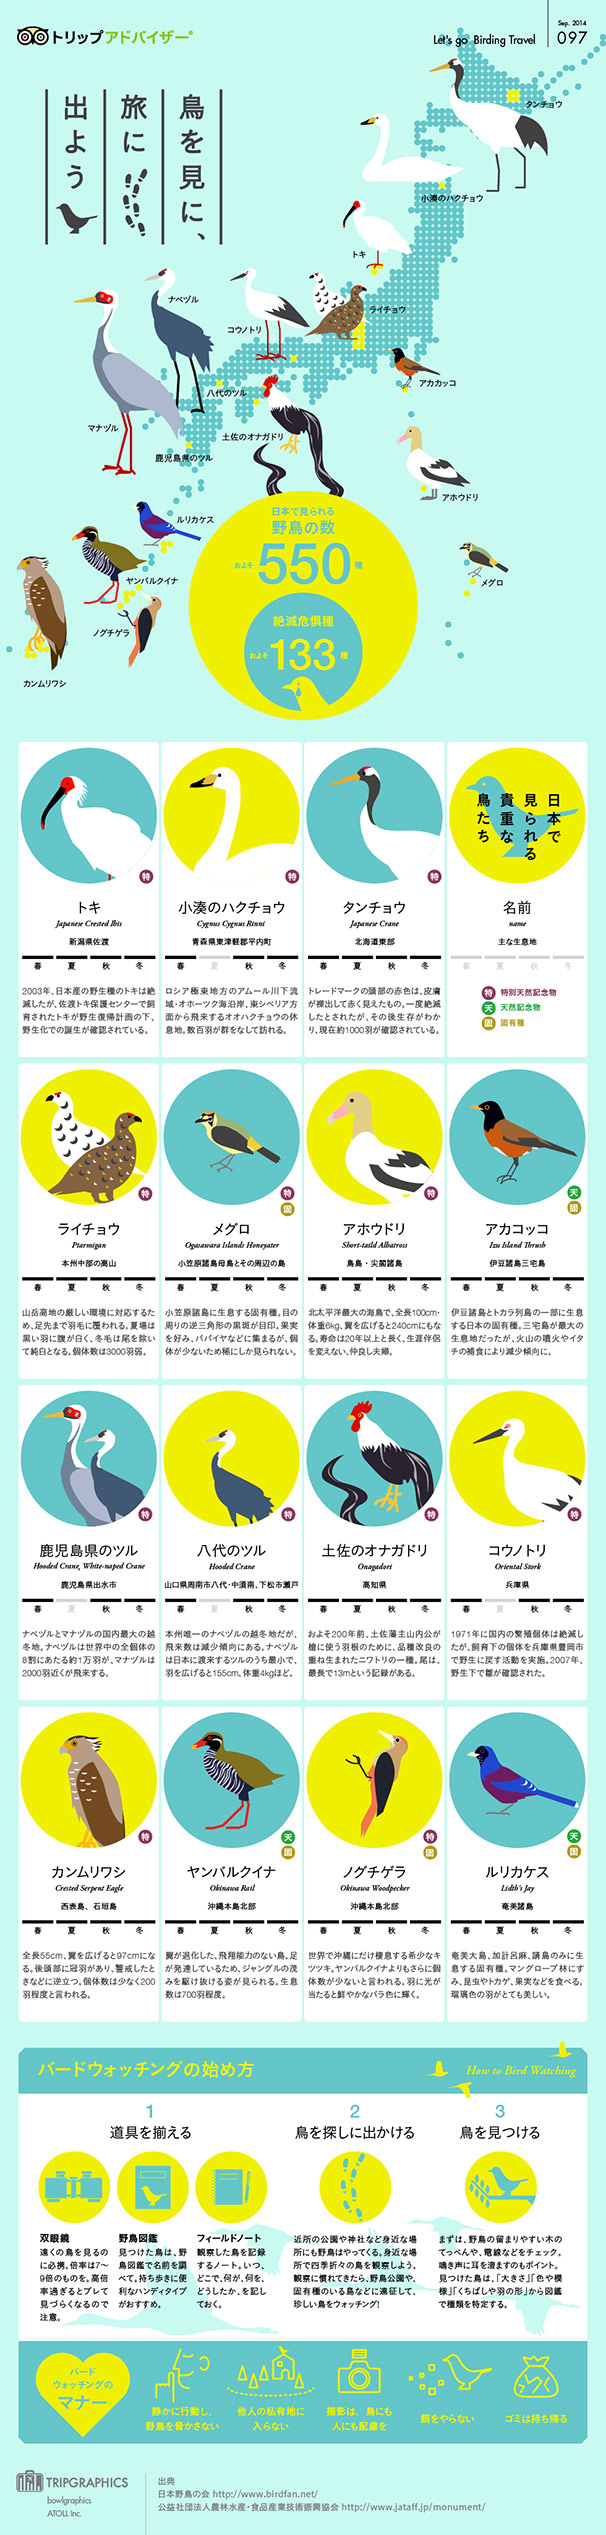 tg_birdwatching_01